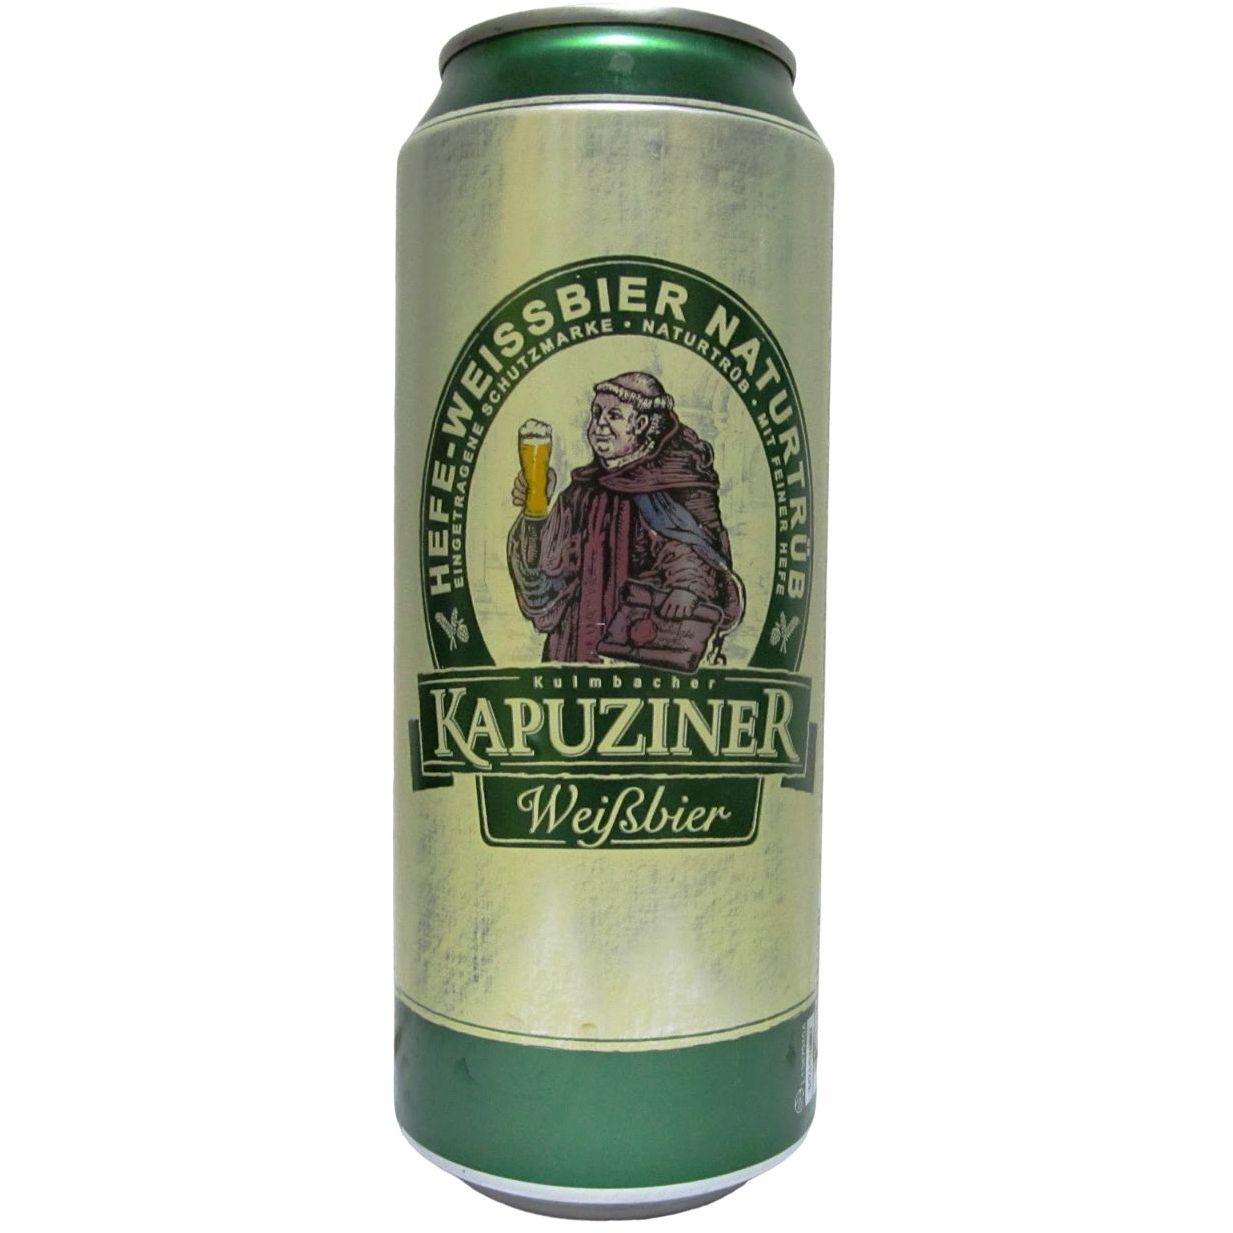 Пиво Kapuziner Wessbier, светлое, нефильтрованное, 5,4%, ж/б, 0,5 л - фото 1